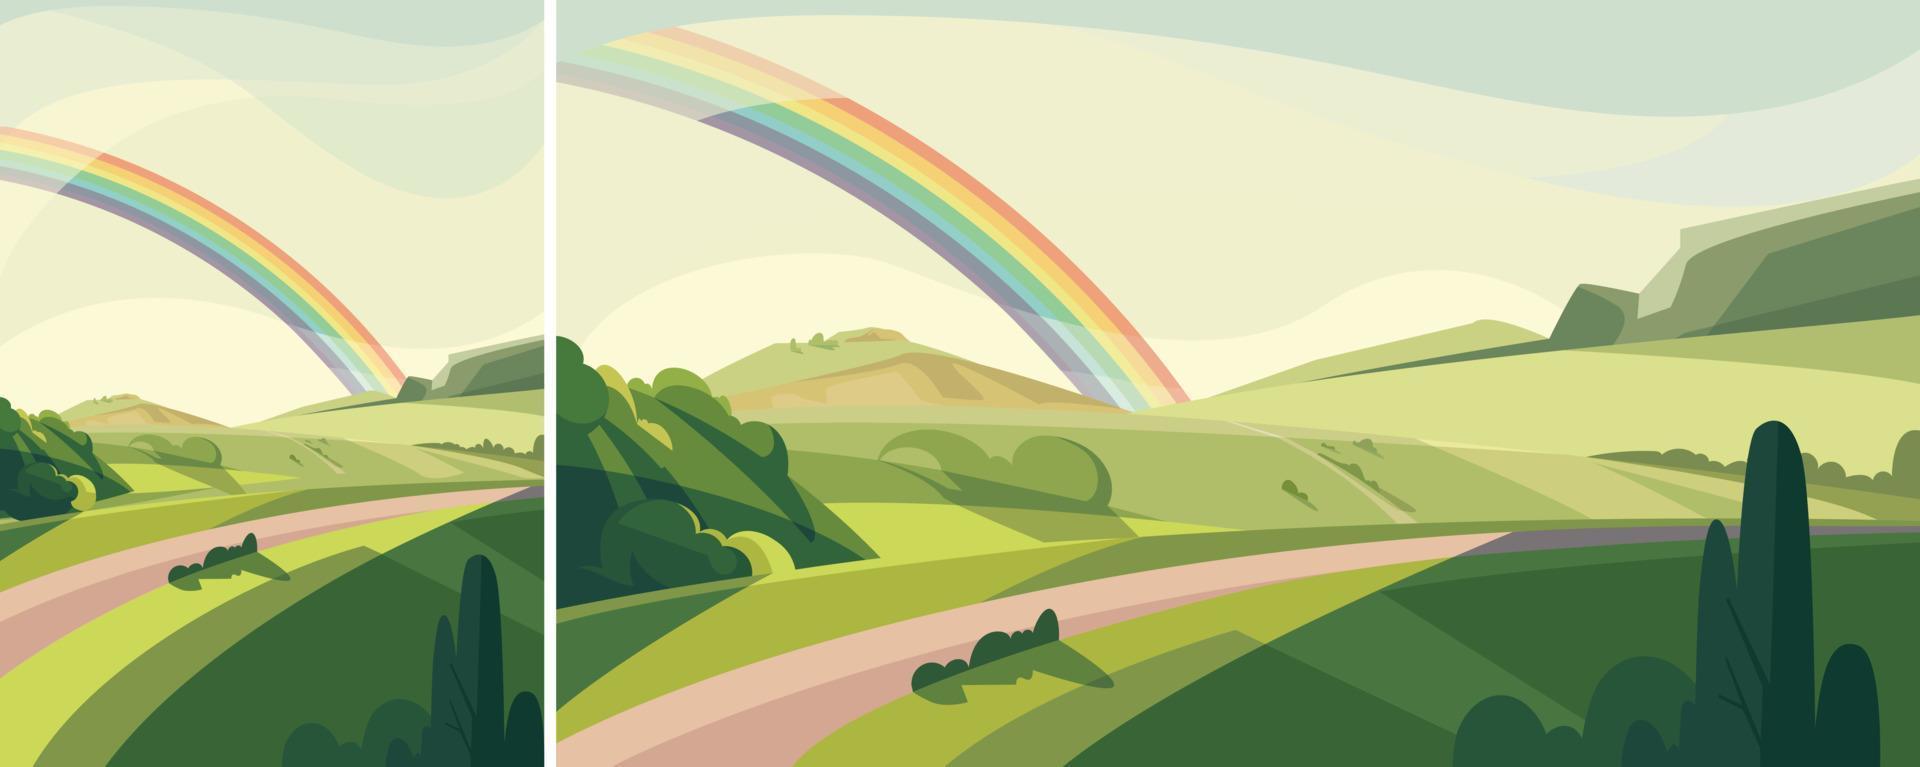 paesaggio con colline e arcobaleno. scenario naturale in diversi formati. vettore